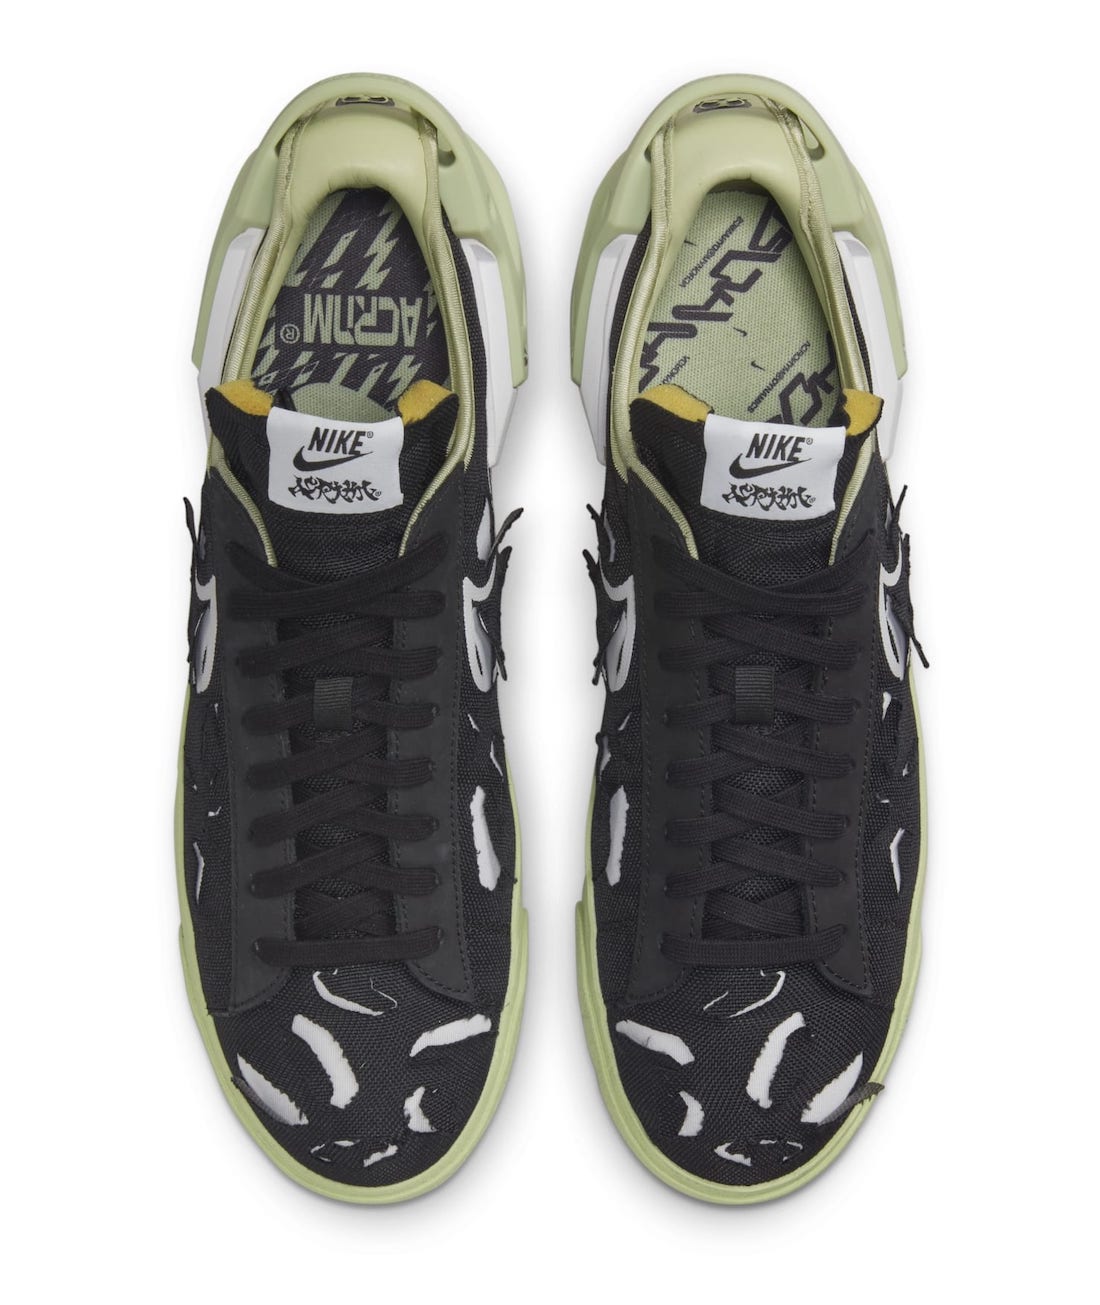 Acronym x Nike Blazer Low Black DN2067-001 Release Date